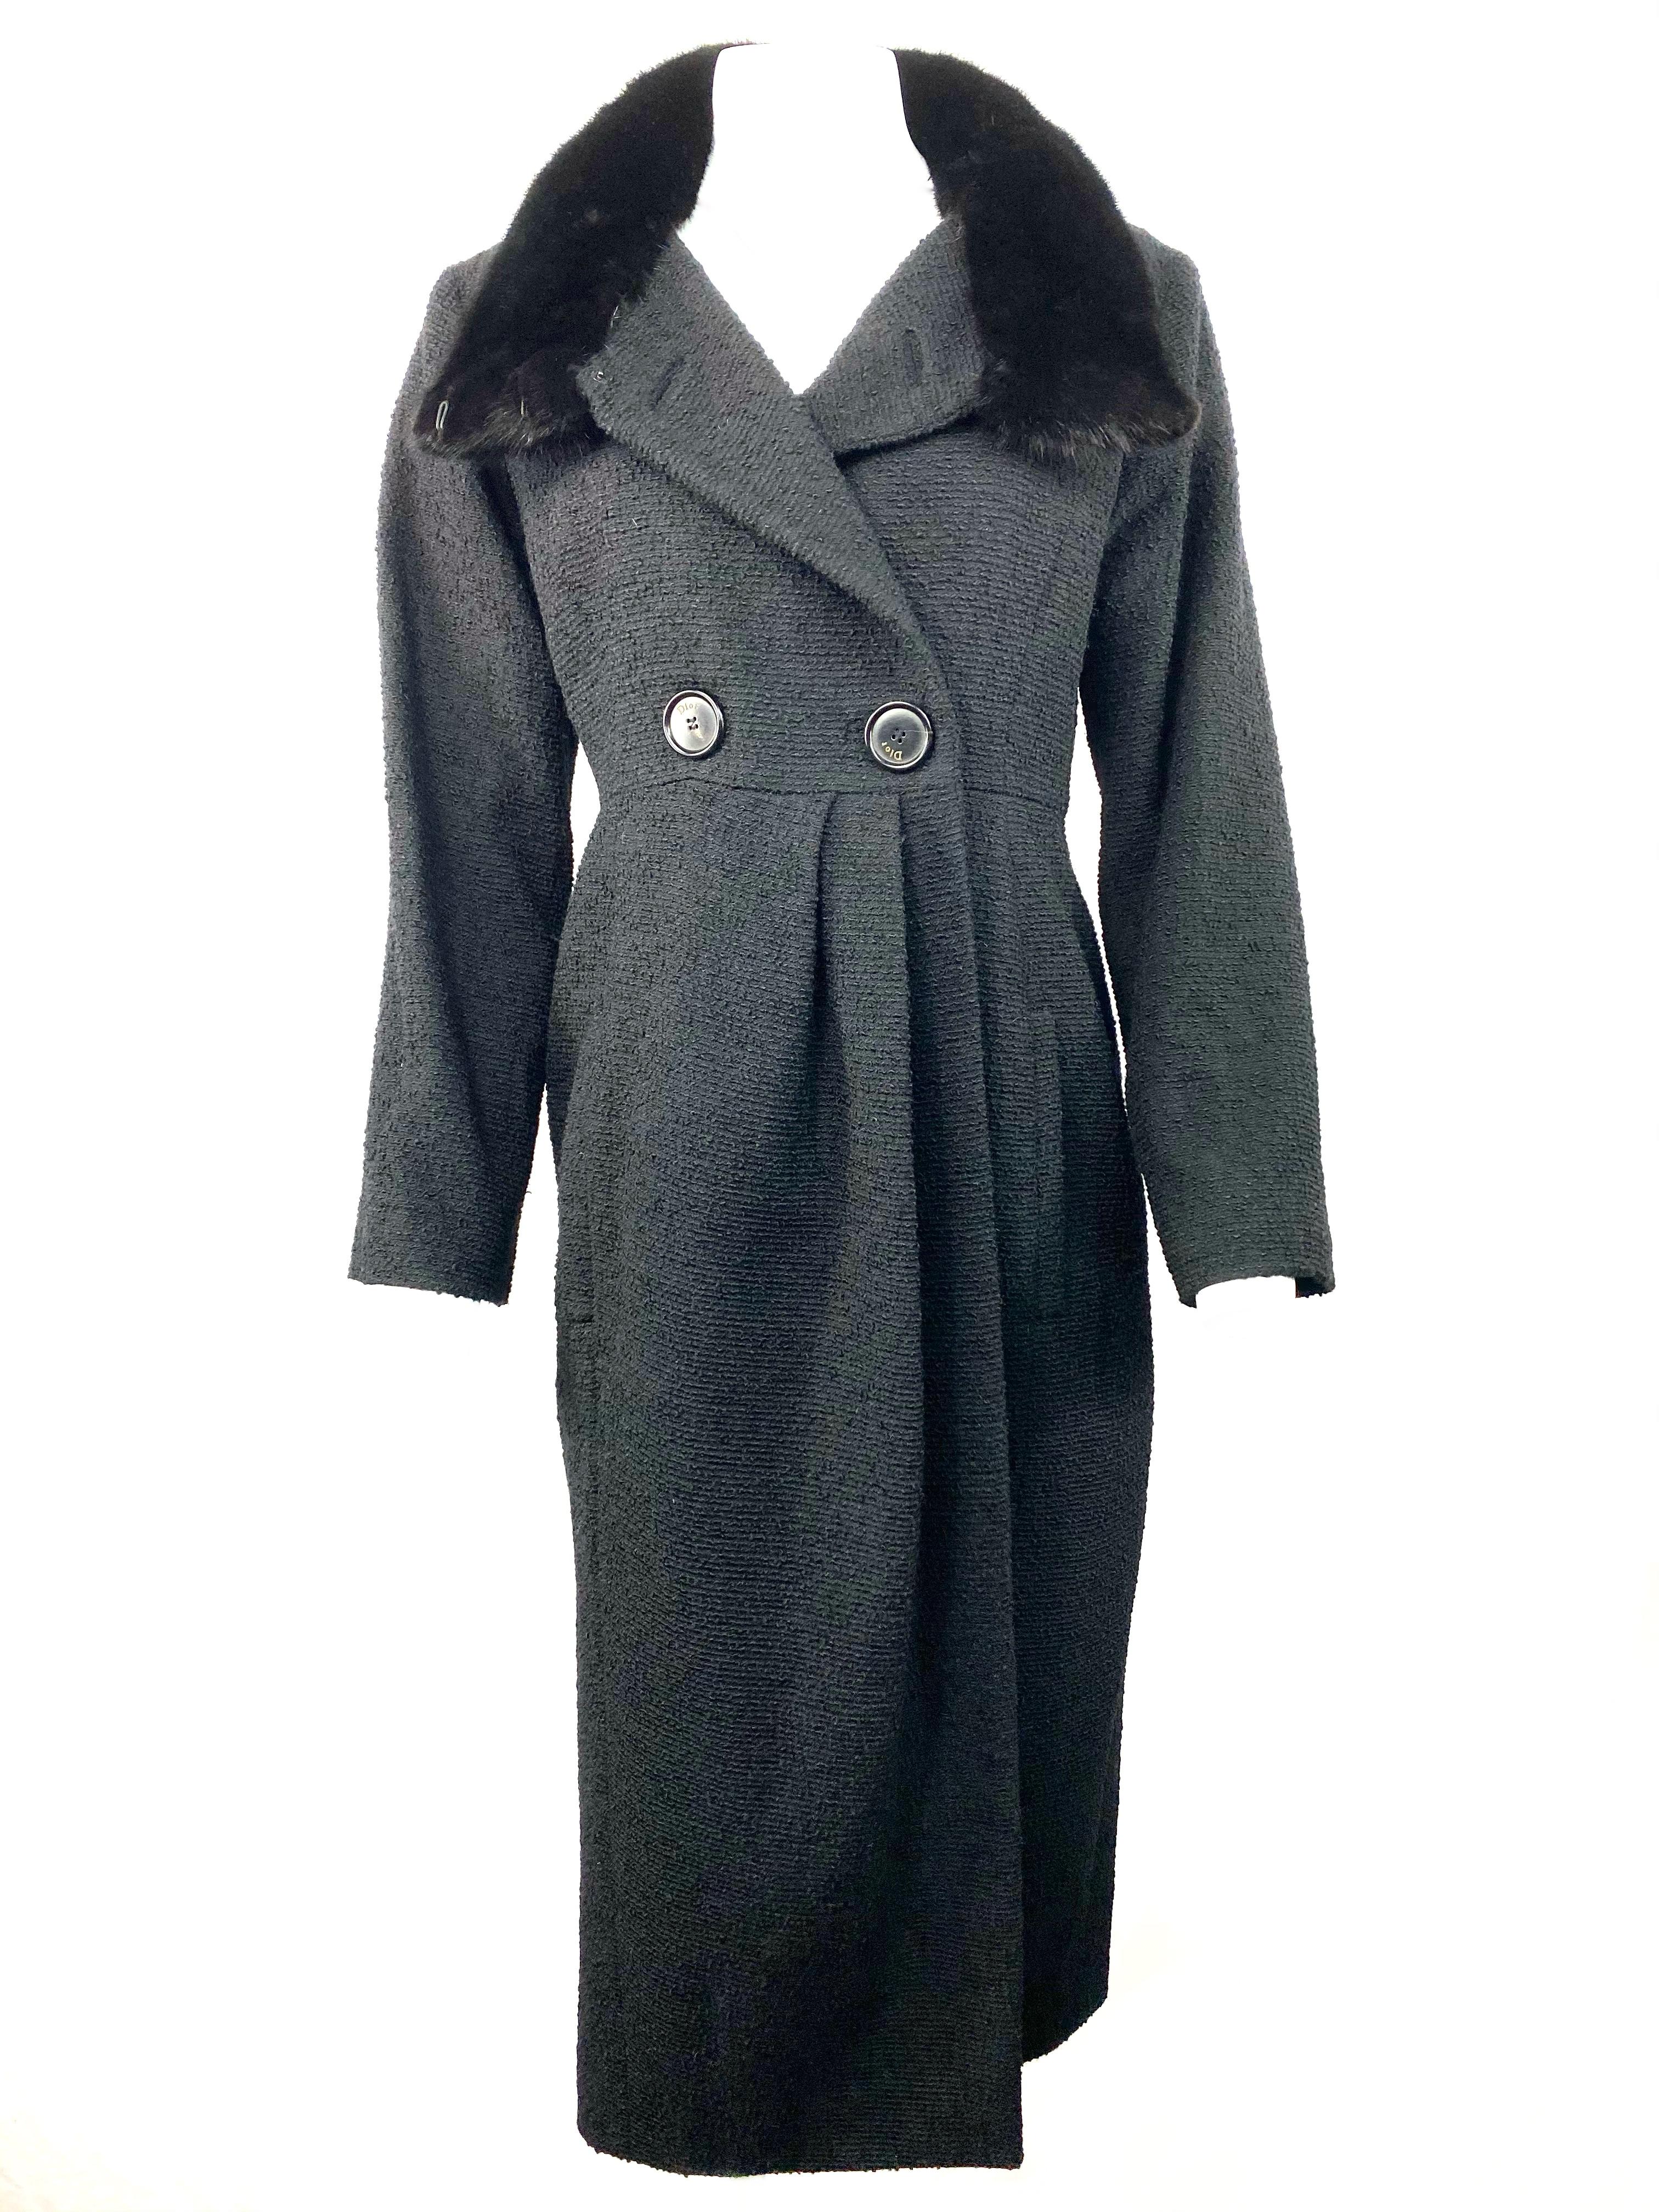 Noir Christian Dior - Veste manteau en tweed de laine noir et fourrure, taille 40